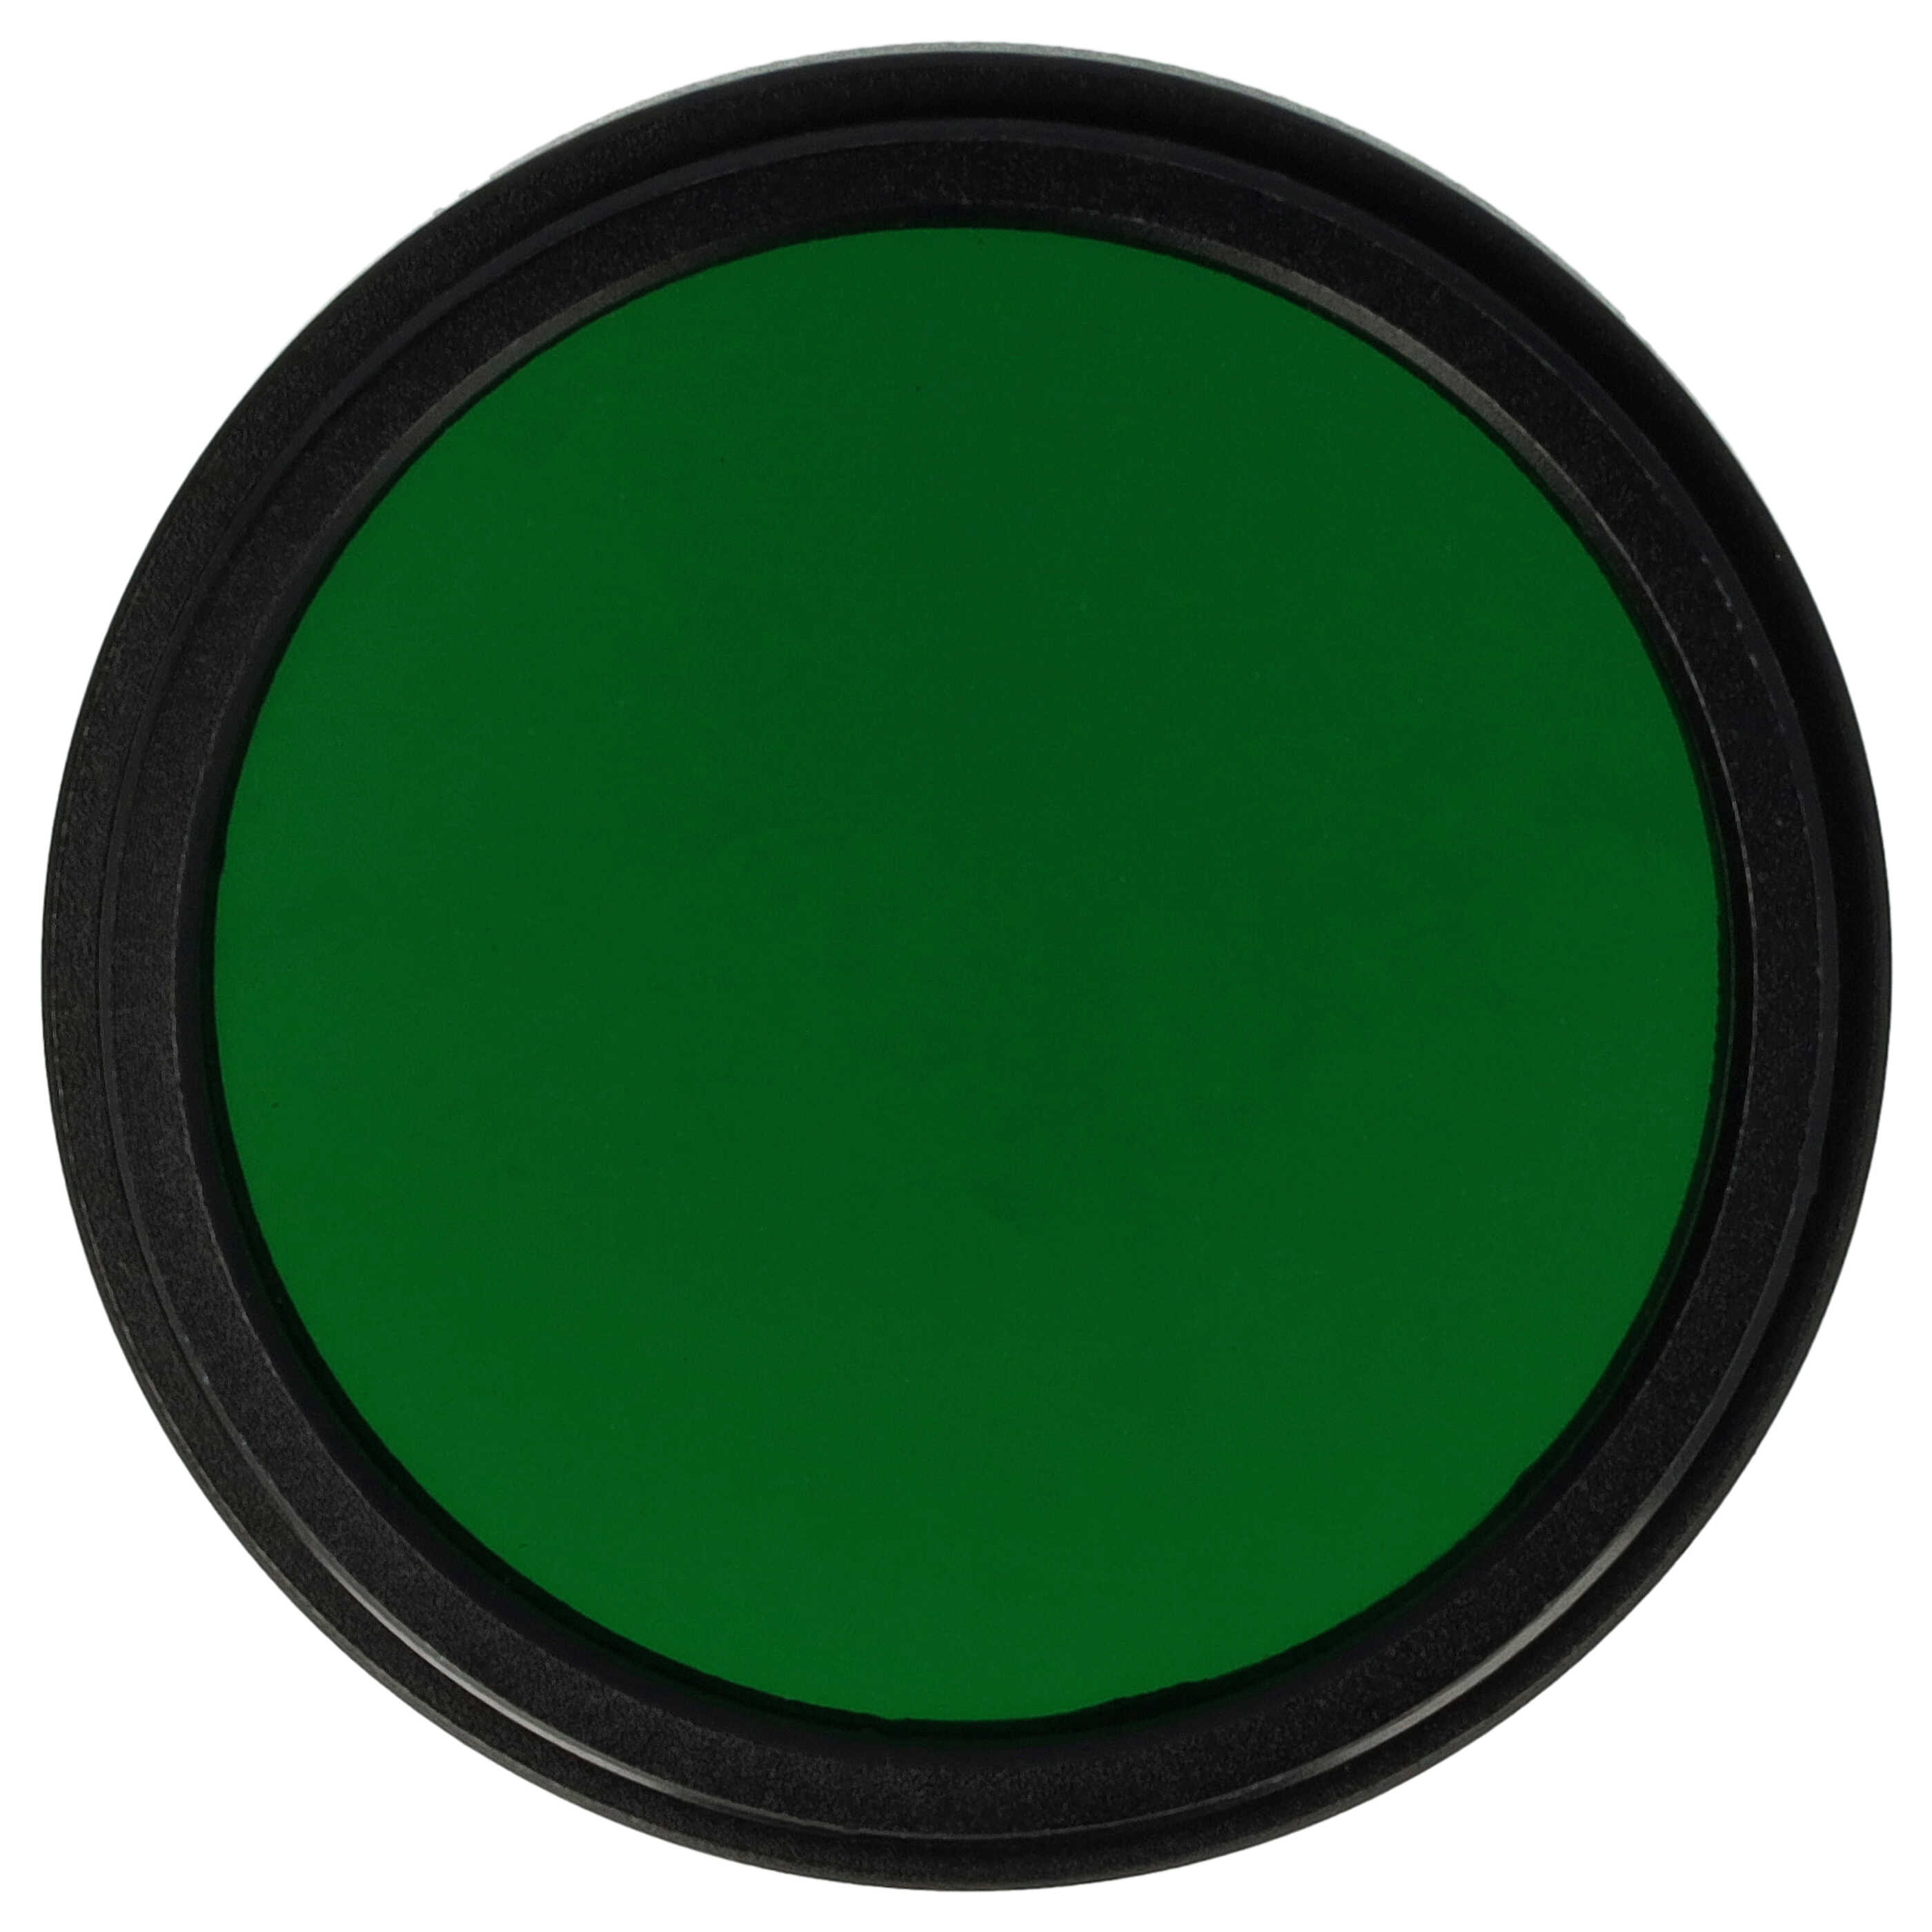 Filtr fotograficzny na obiektywy z gwintem 37 mm - filtr zielony